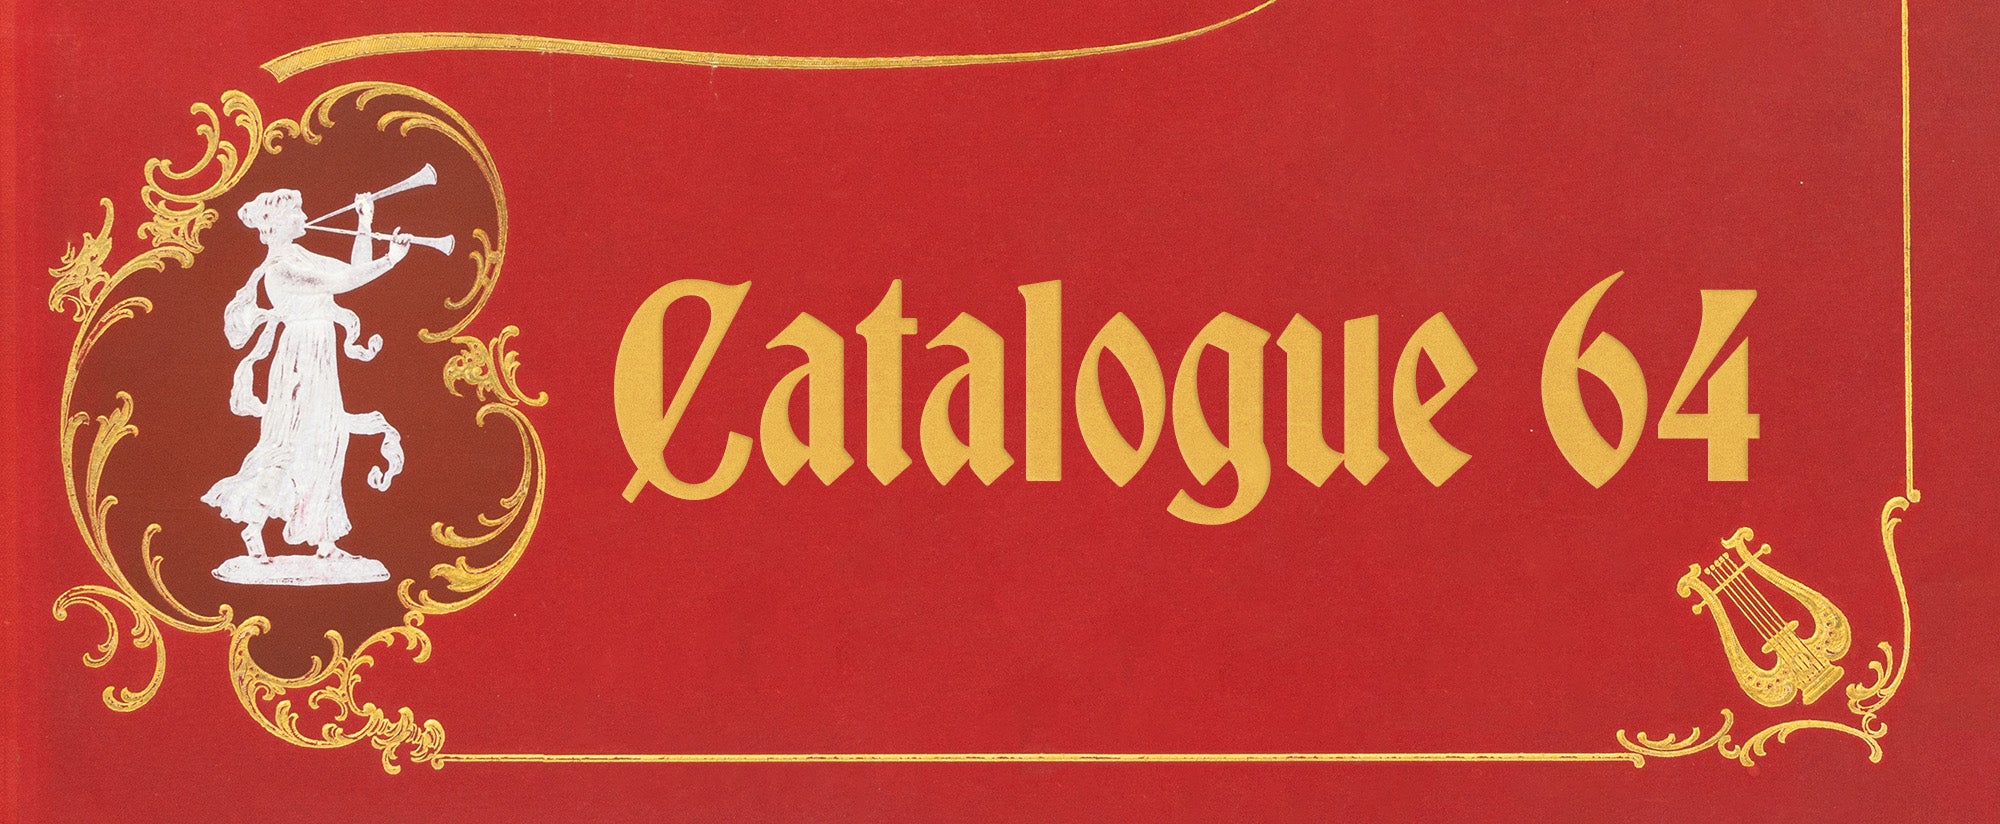 Catalogue #64